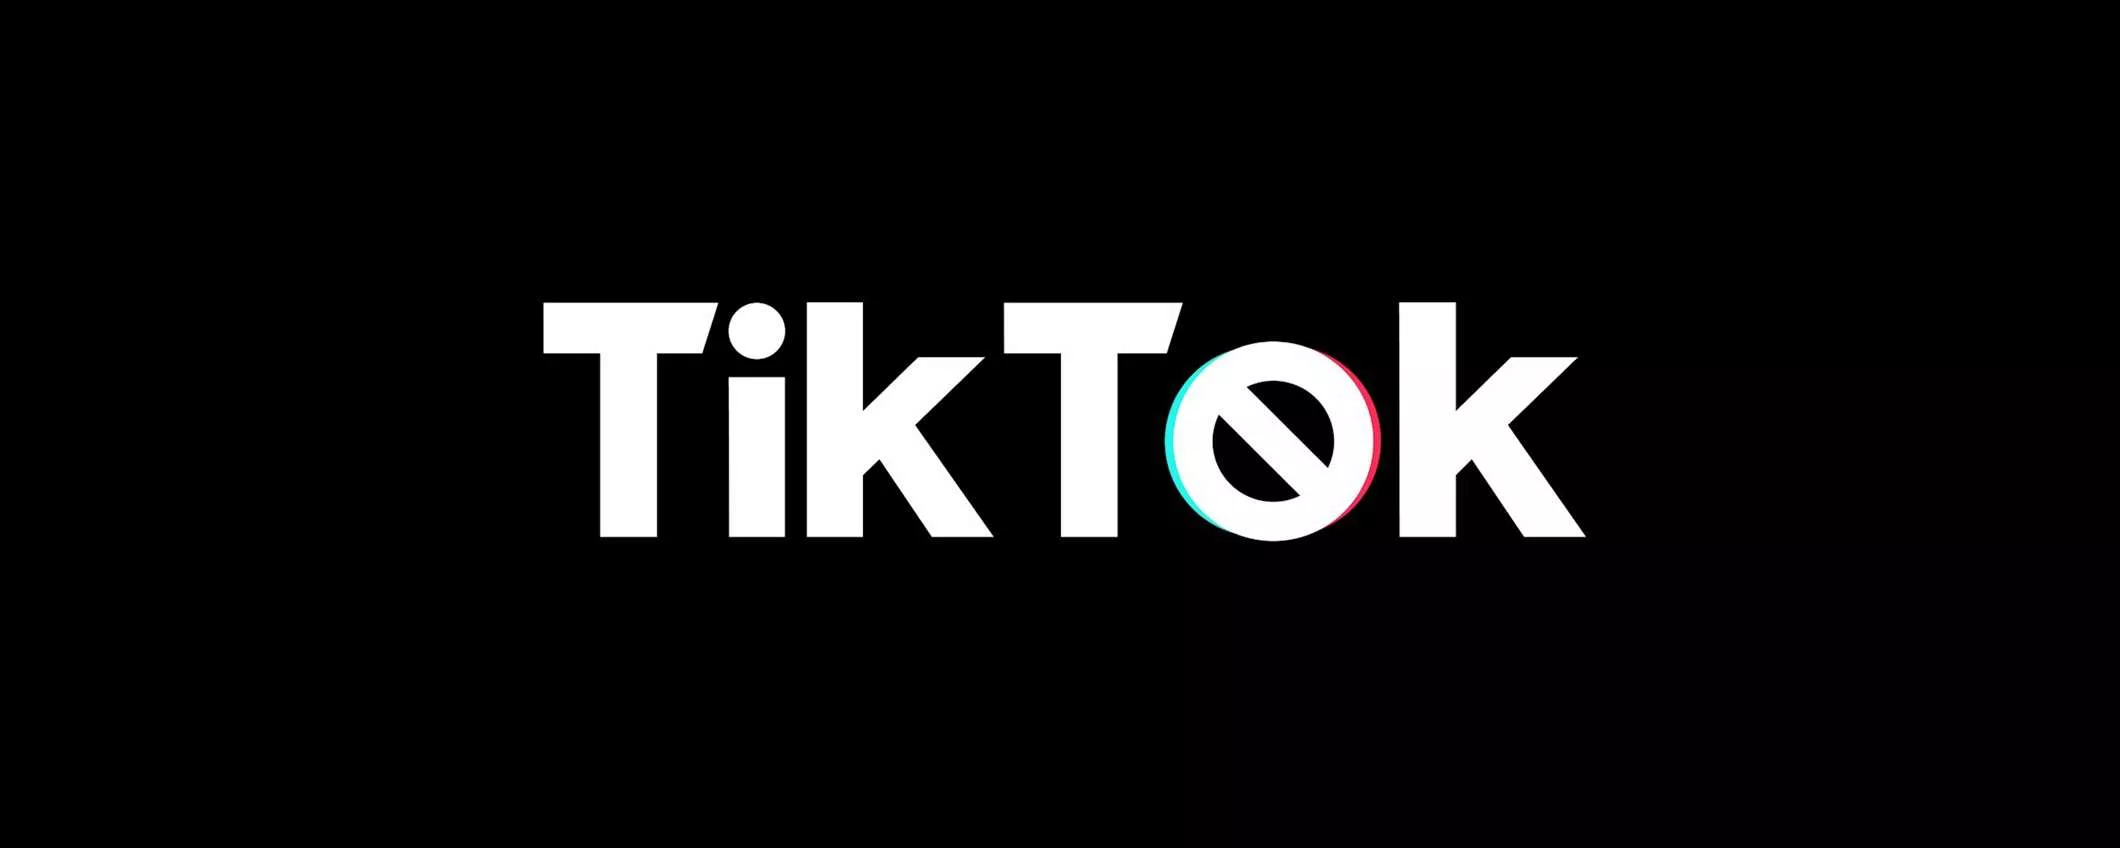 Come risolvere i problemi più frequenti di TikTok